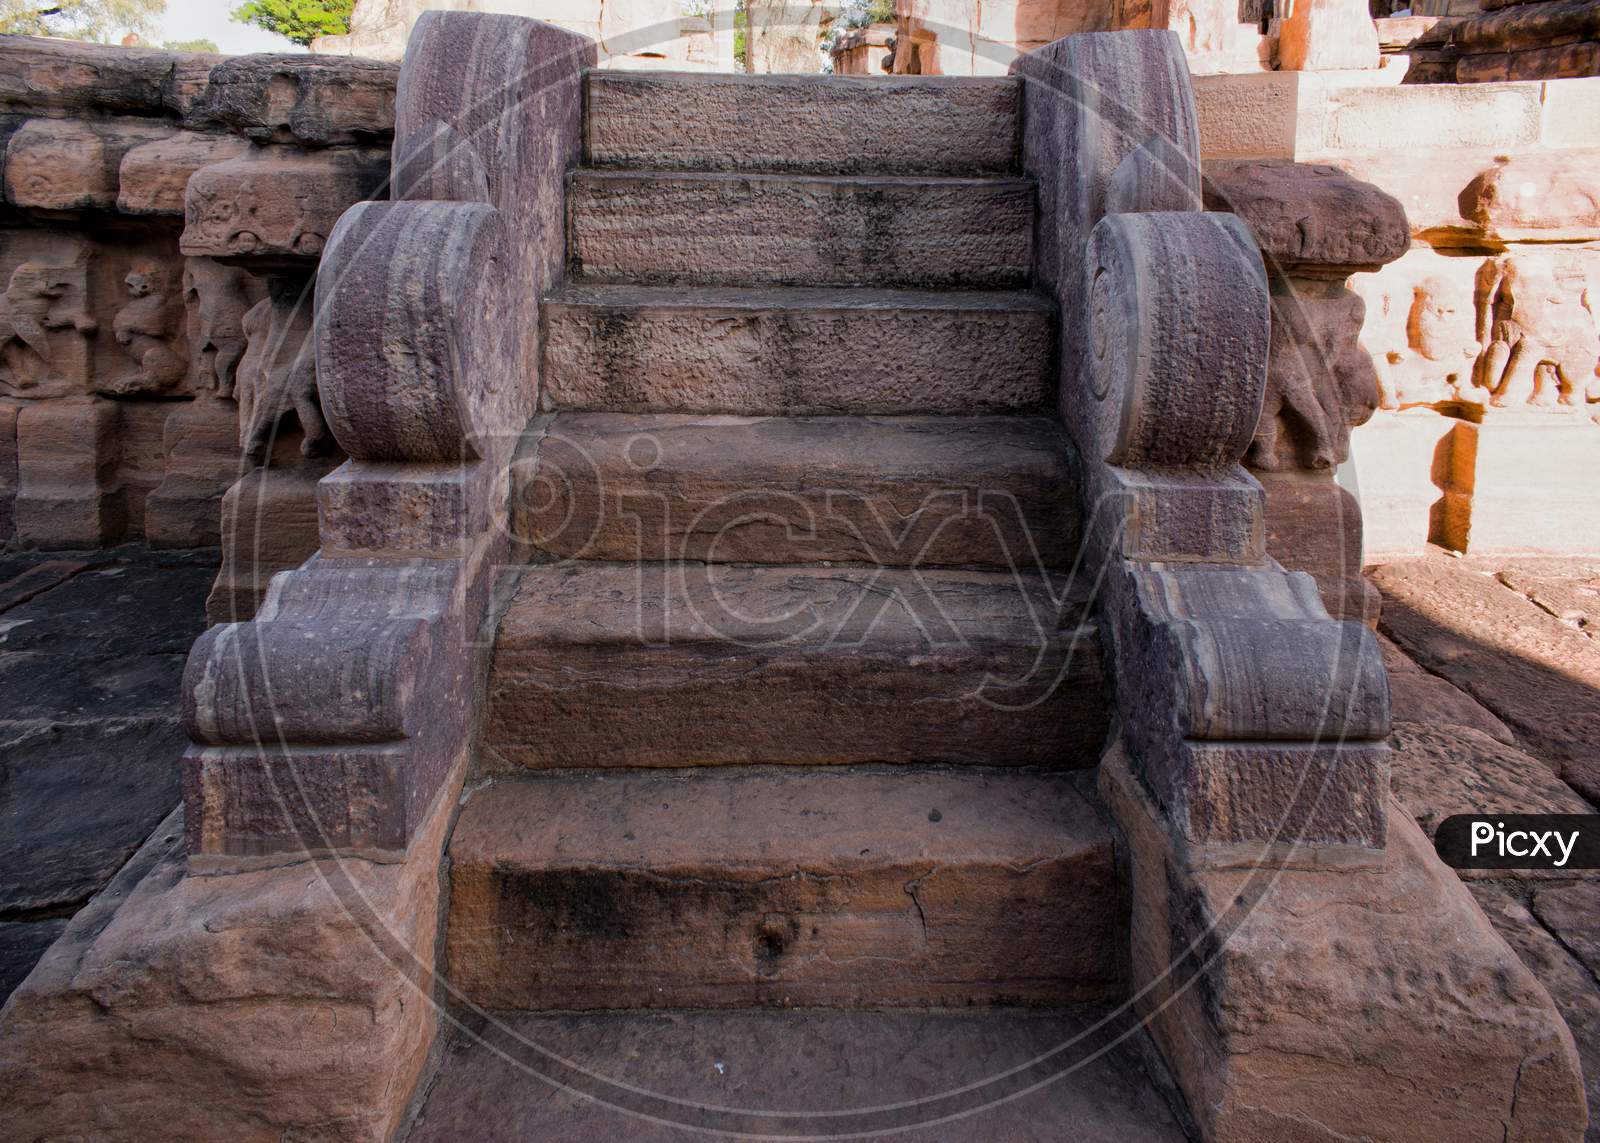 Ancient staircase built with stone at Pattadakal, karnataka